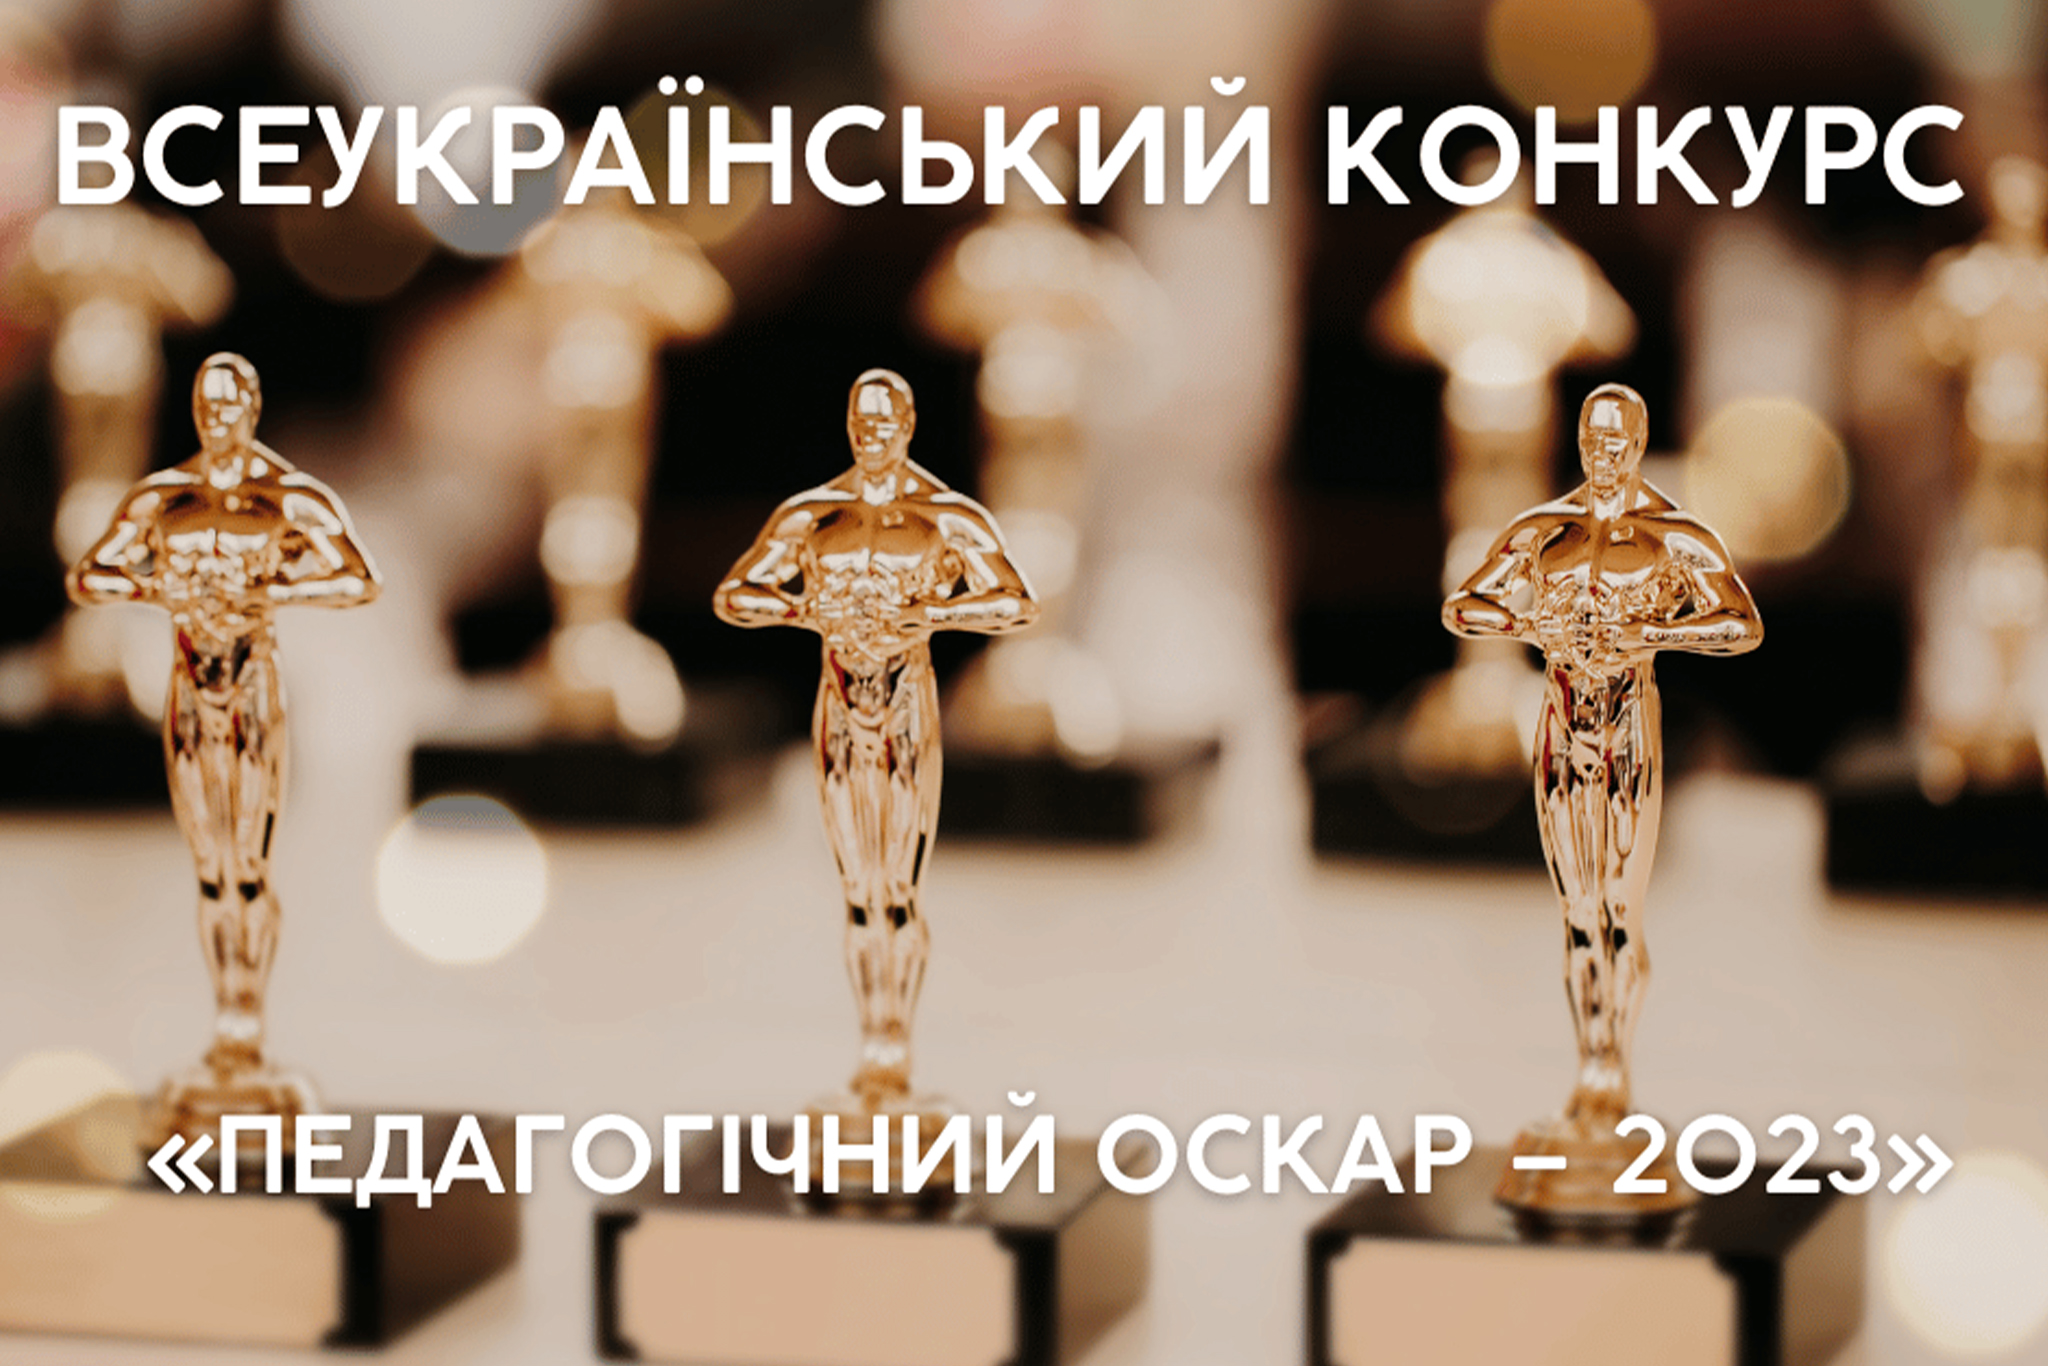 ІІІ місце у Всеукраїнському конкурсі “Педагогічний Оскар-2023”